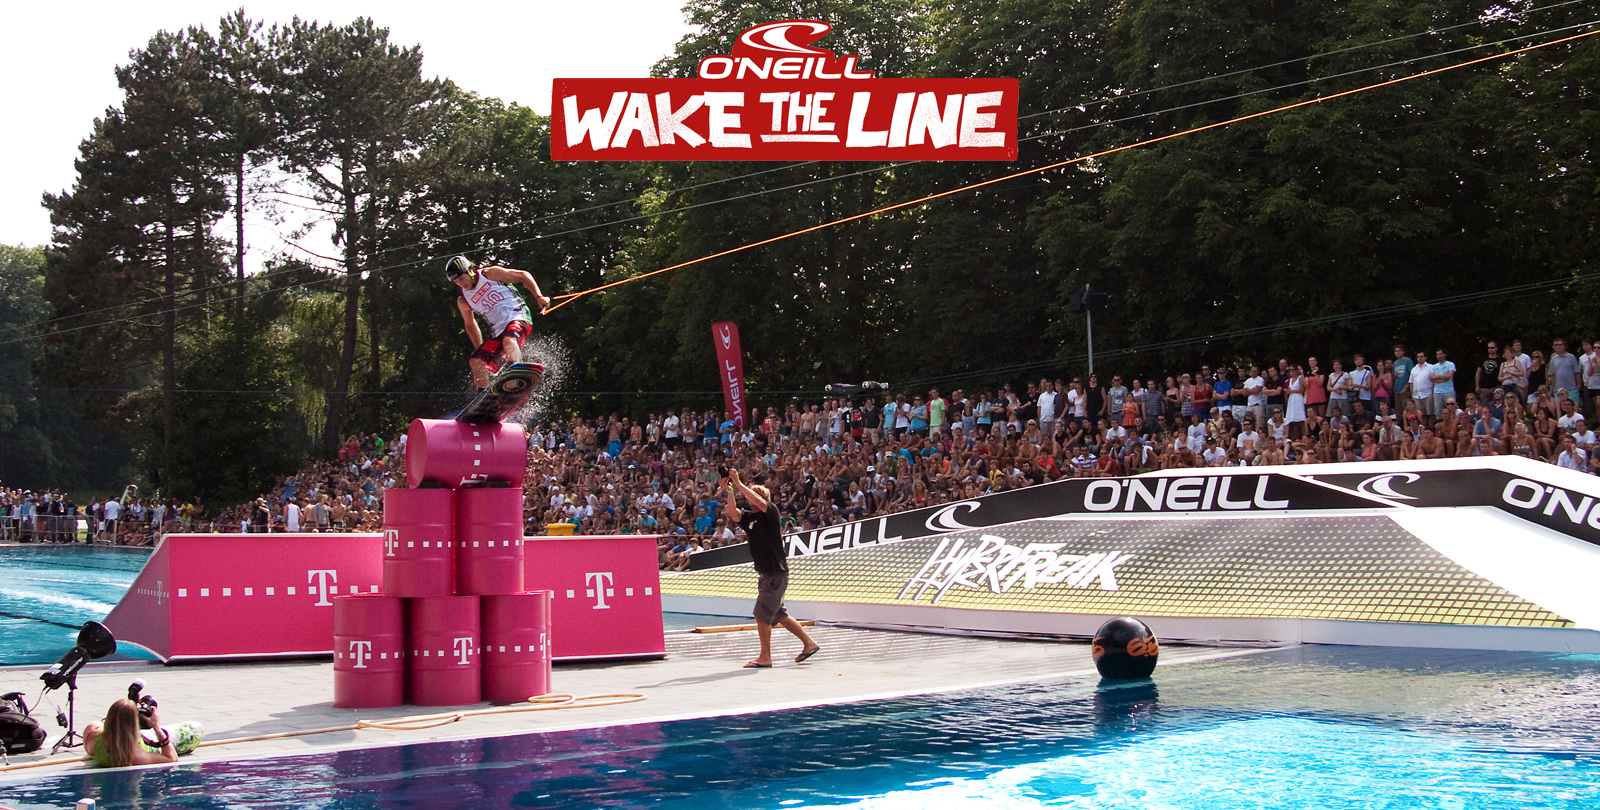 O’Neill Wake the line 2011 – höjdpunkter ifrån Wakeskate tävling i Köln